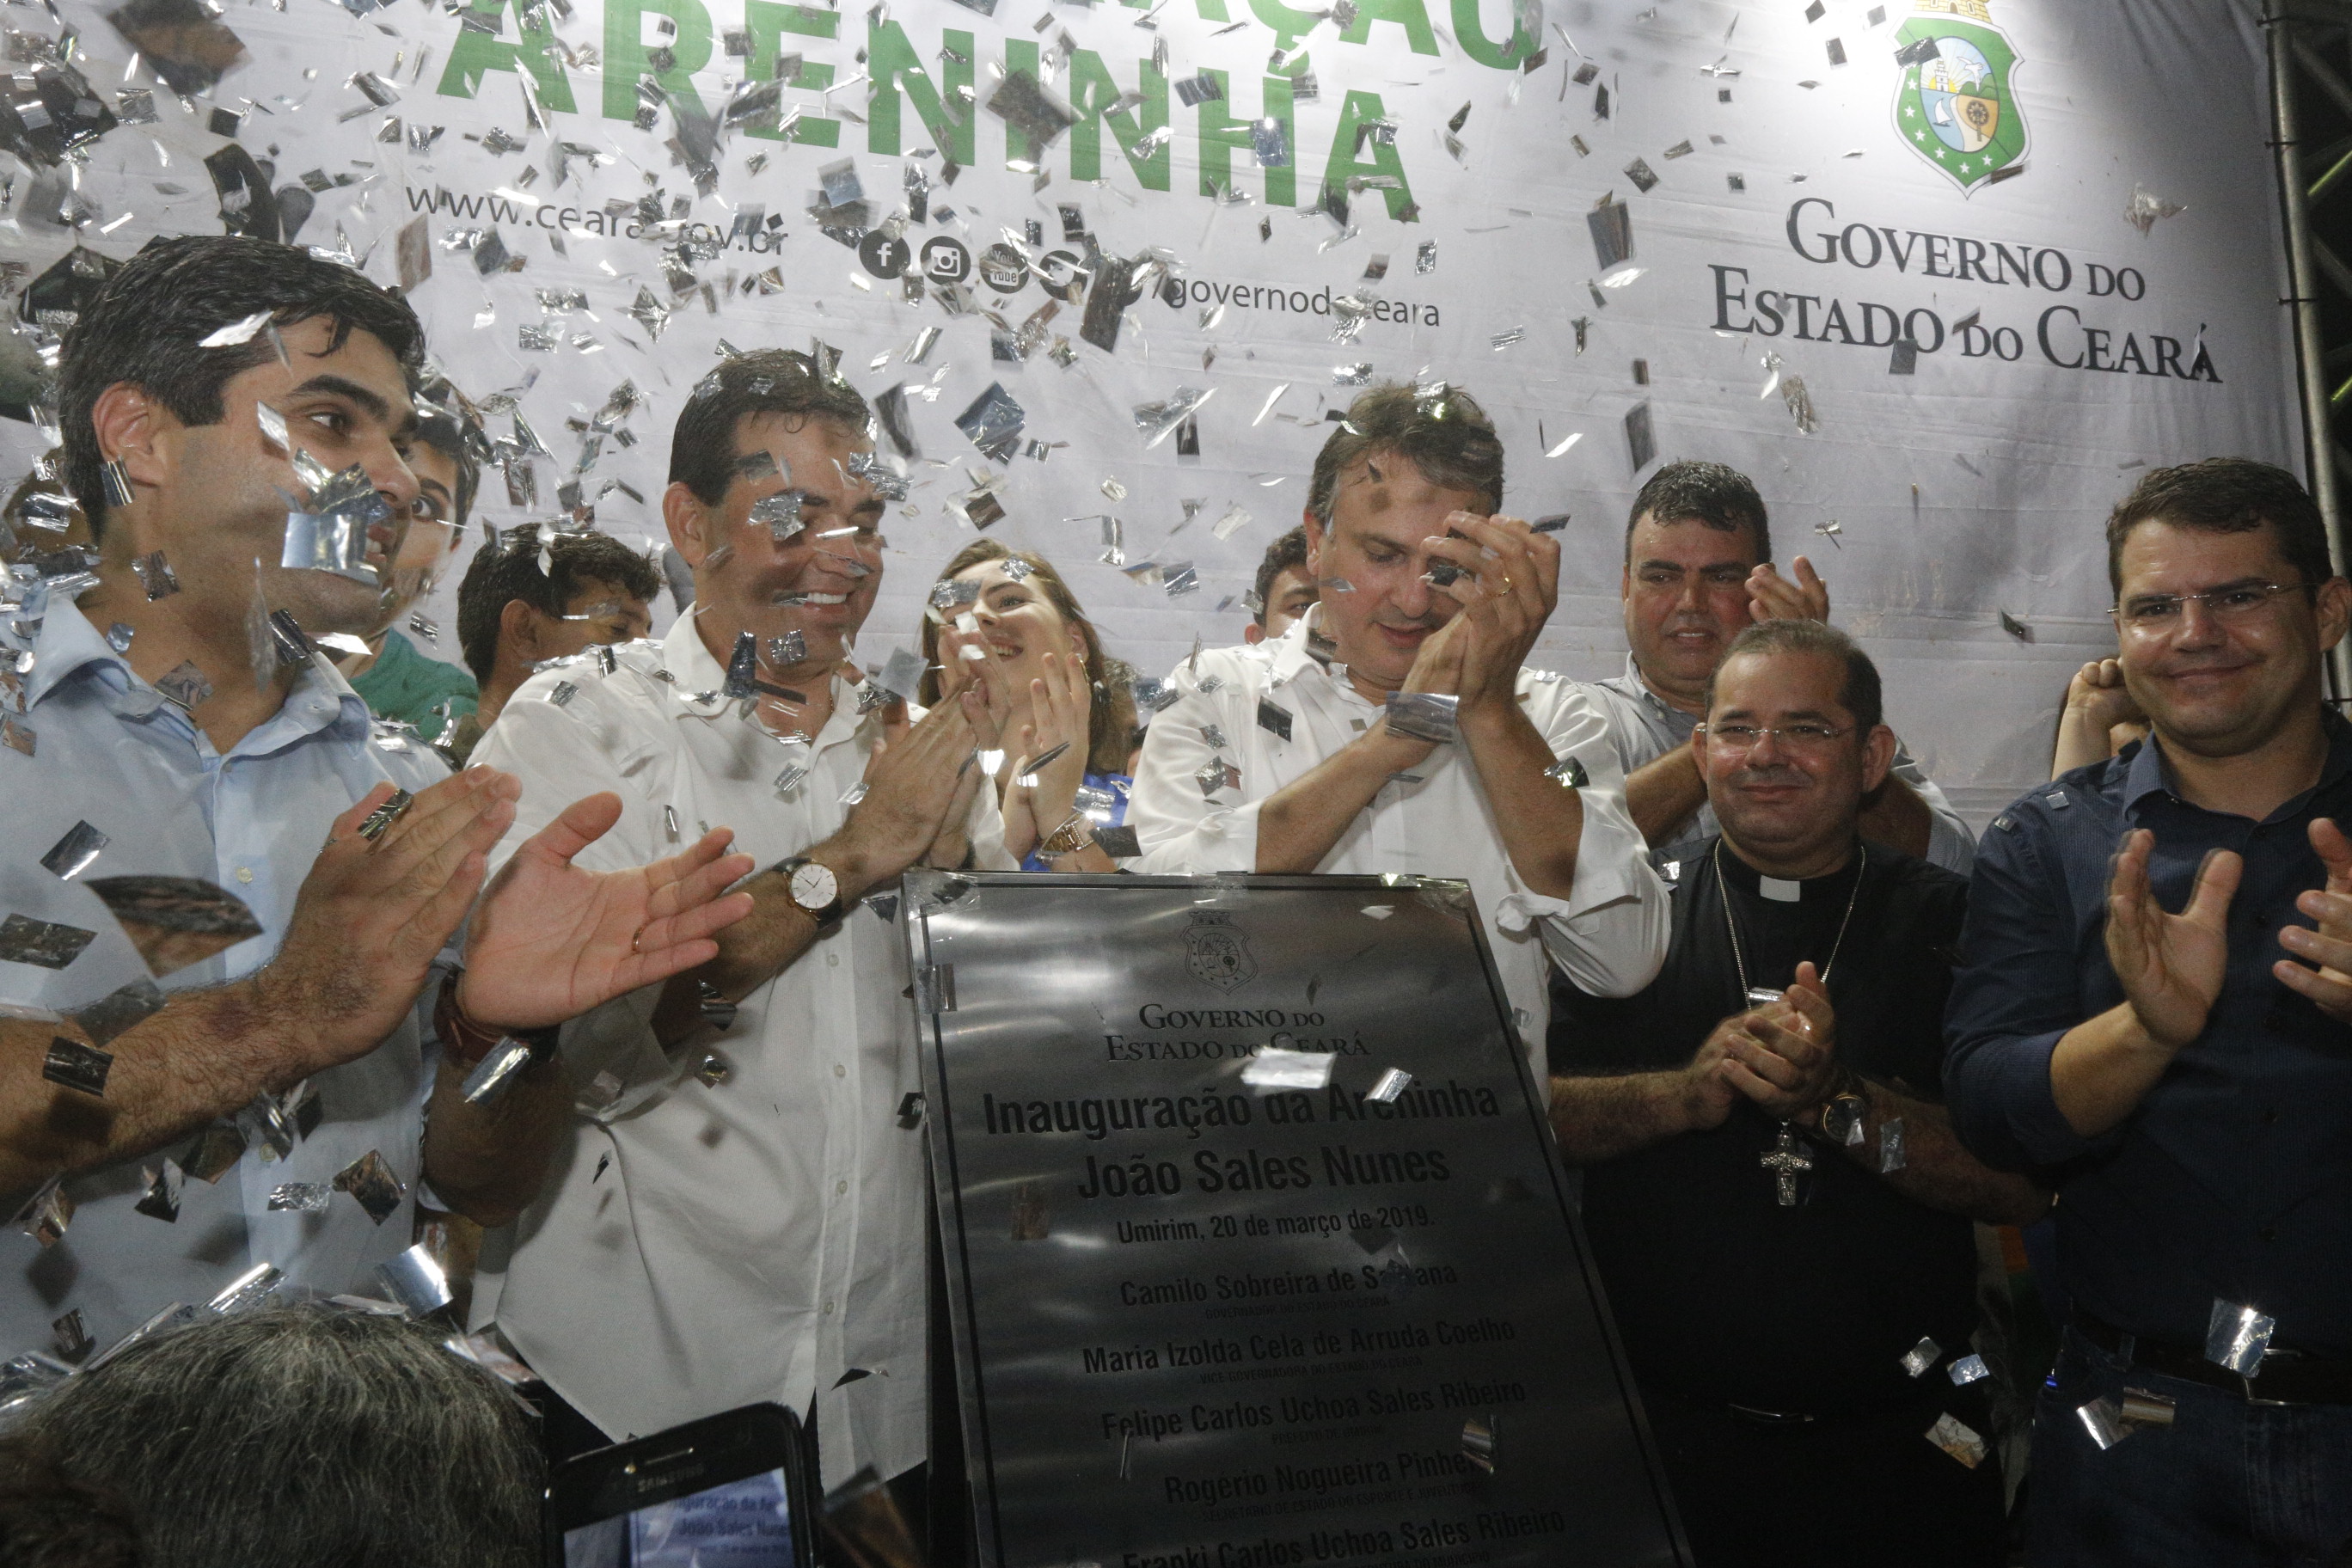 Governador do Ceará bate palmas junto ao povo de Umirim que celebra a inauguração da Areninha diante da placa que registra o momento